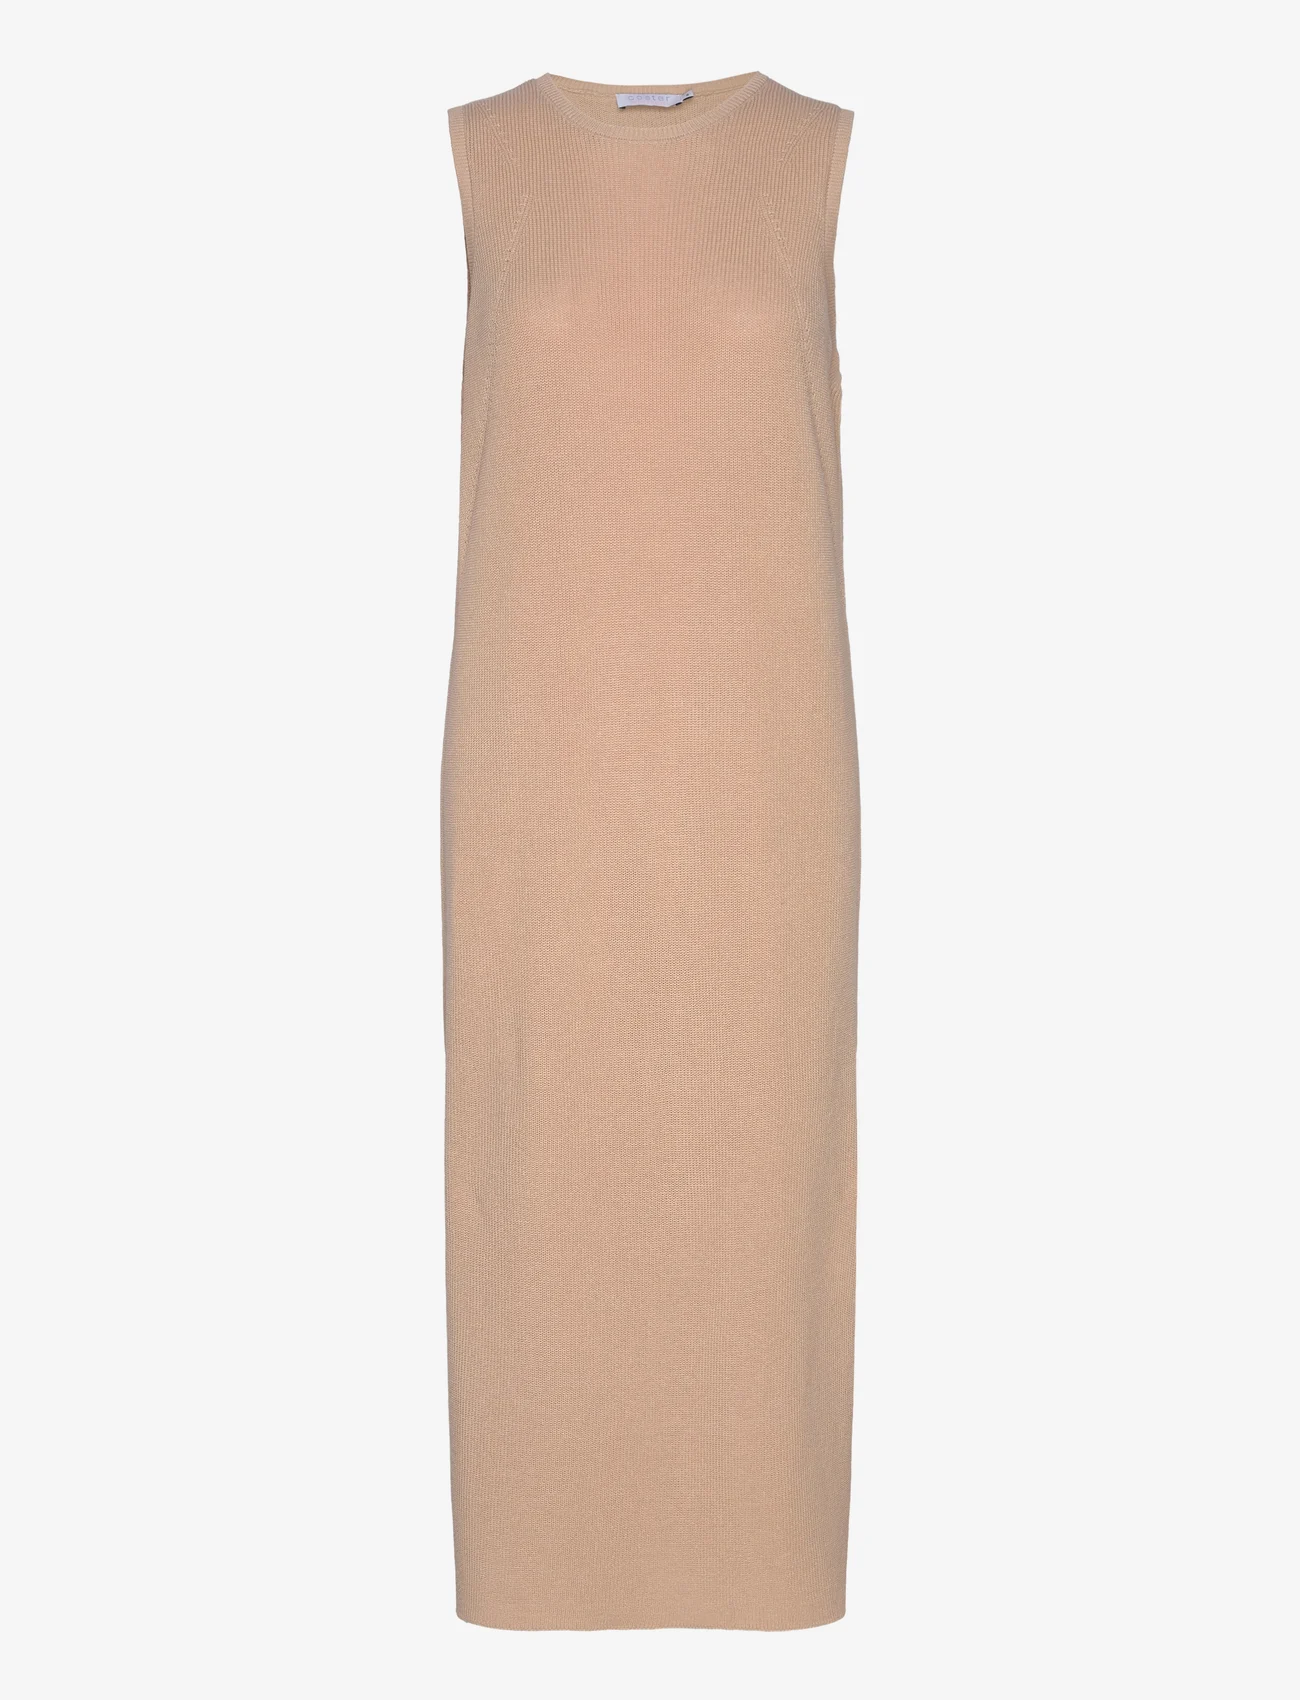 Coster Copenhagen - Long knitted dress - gebreide jurken - light sand - 0